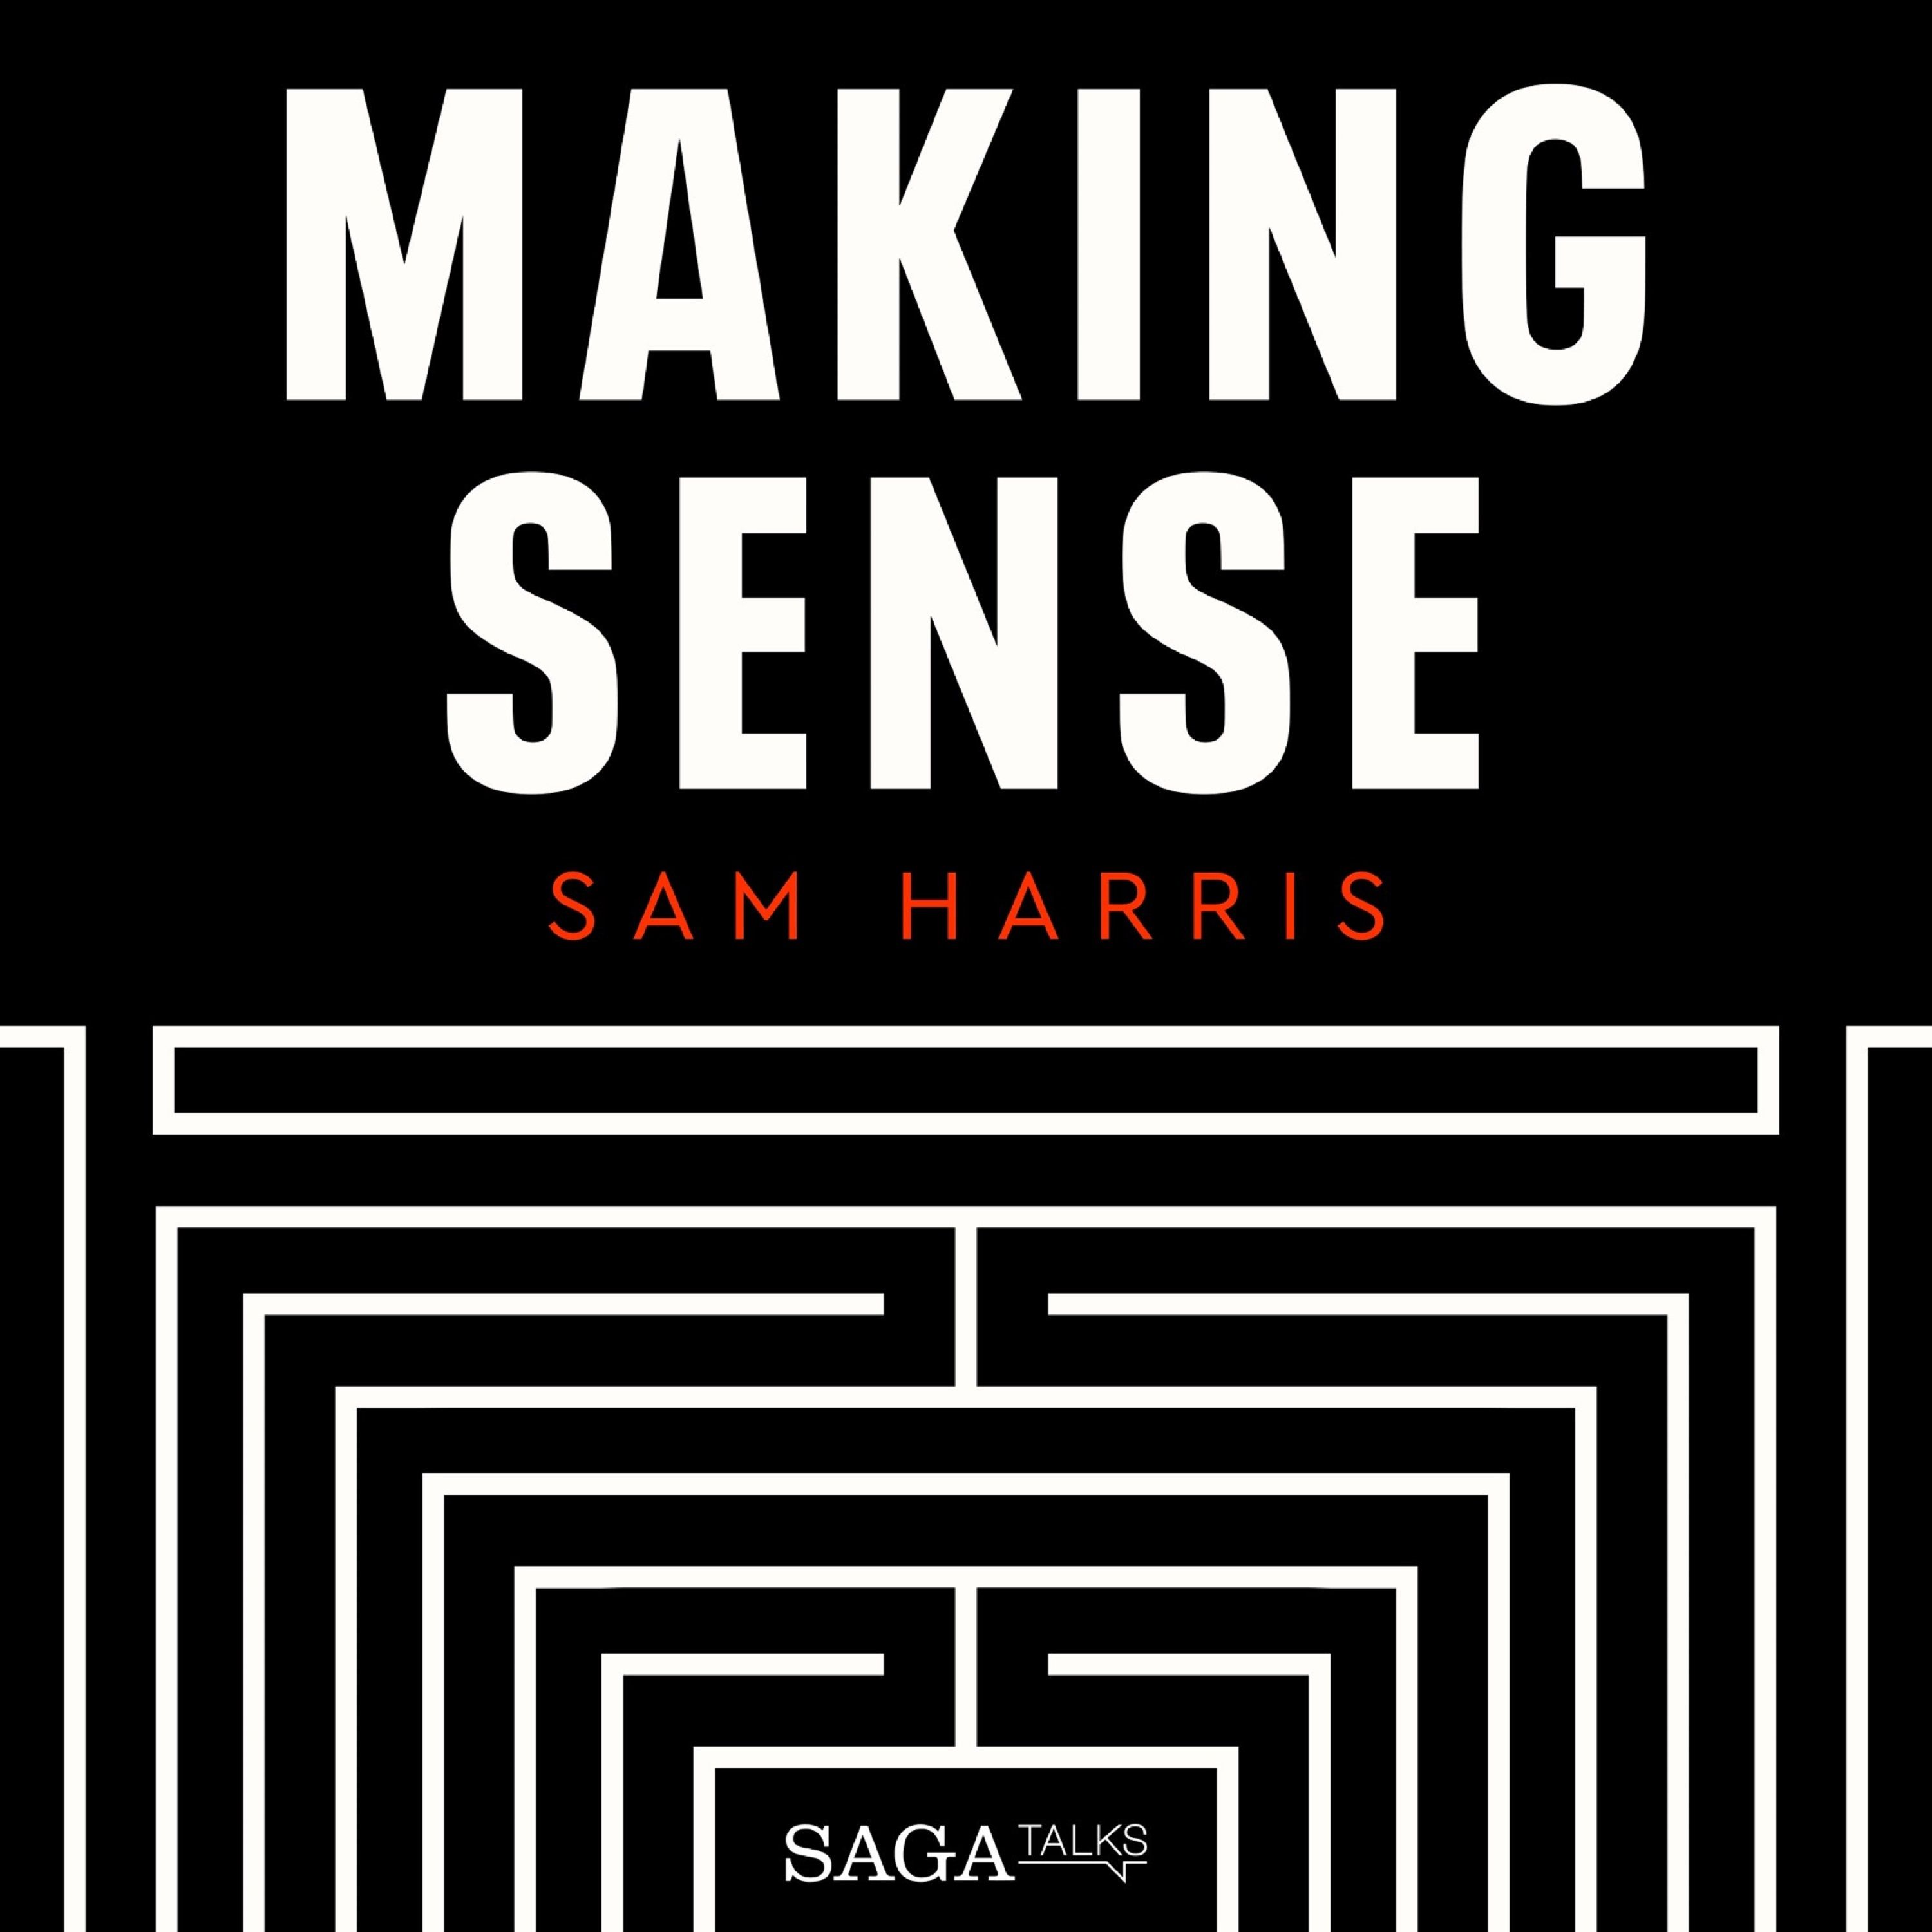 Psychedelic Science, ljudbok av Sam Harris